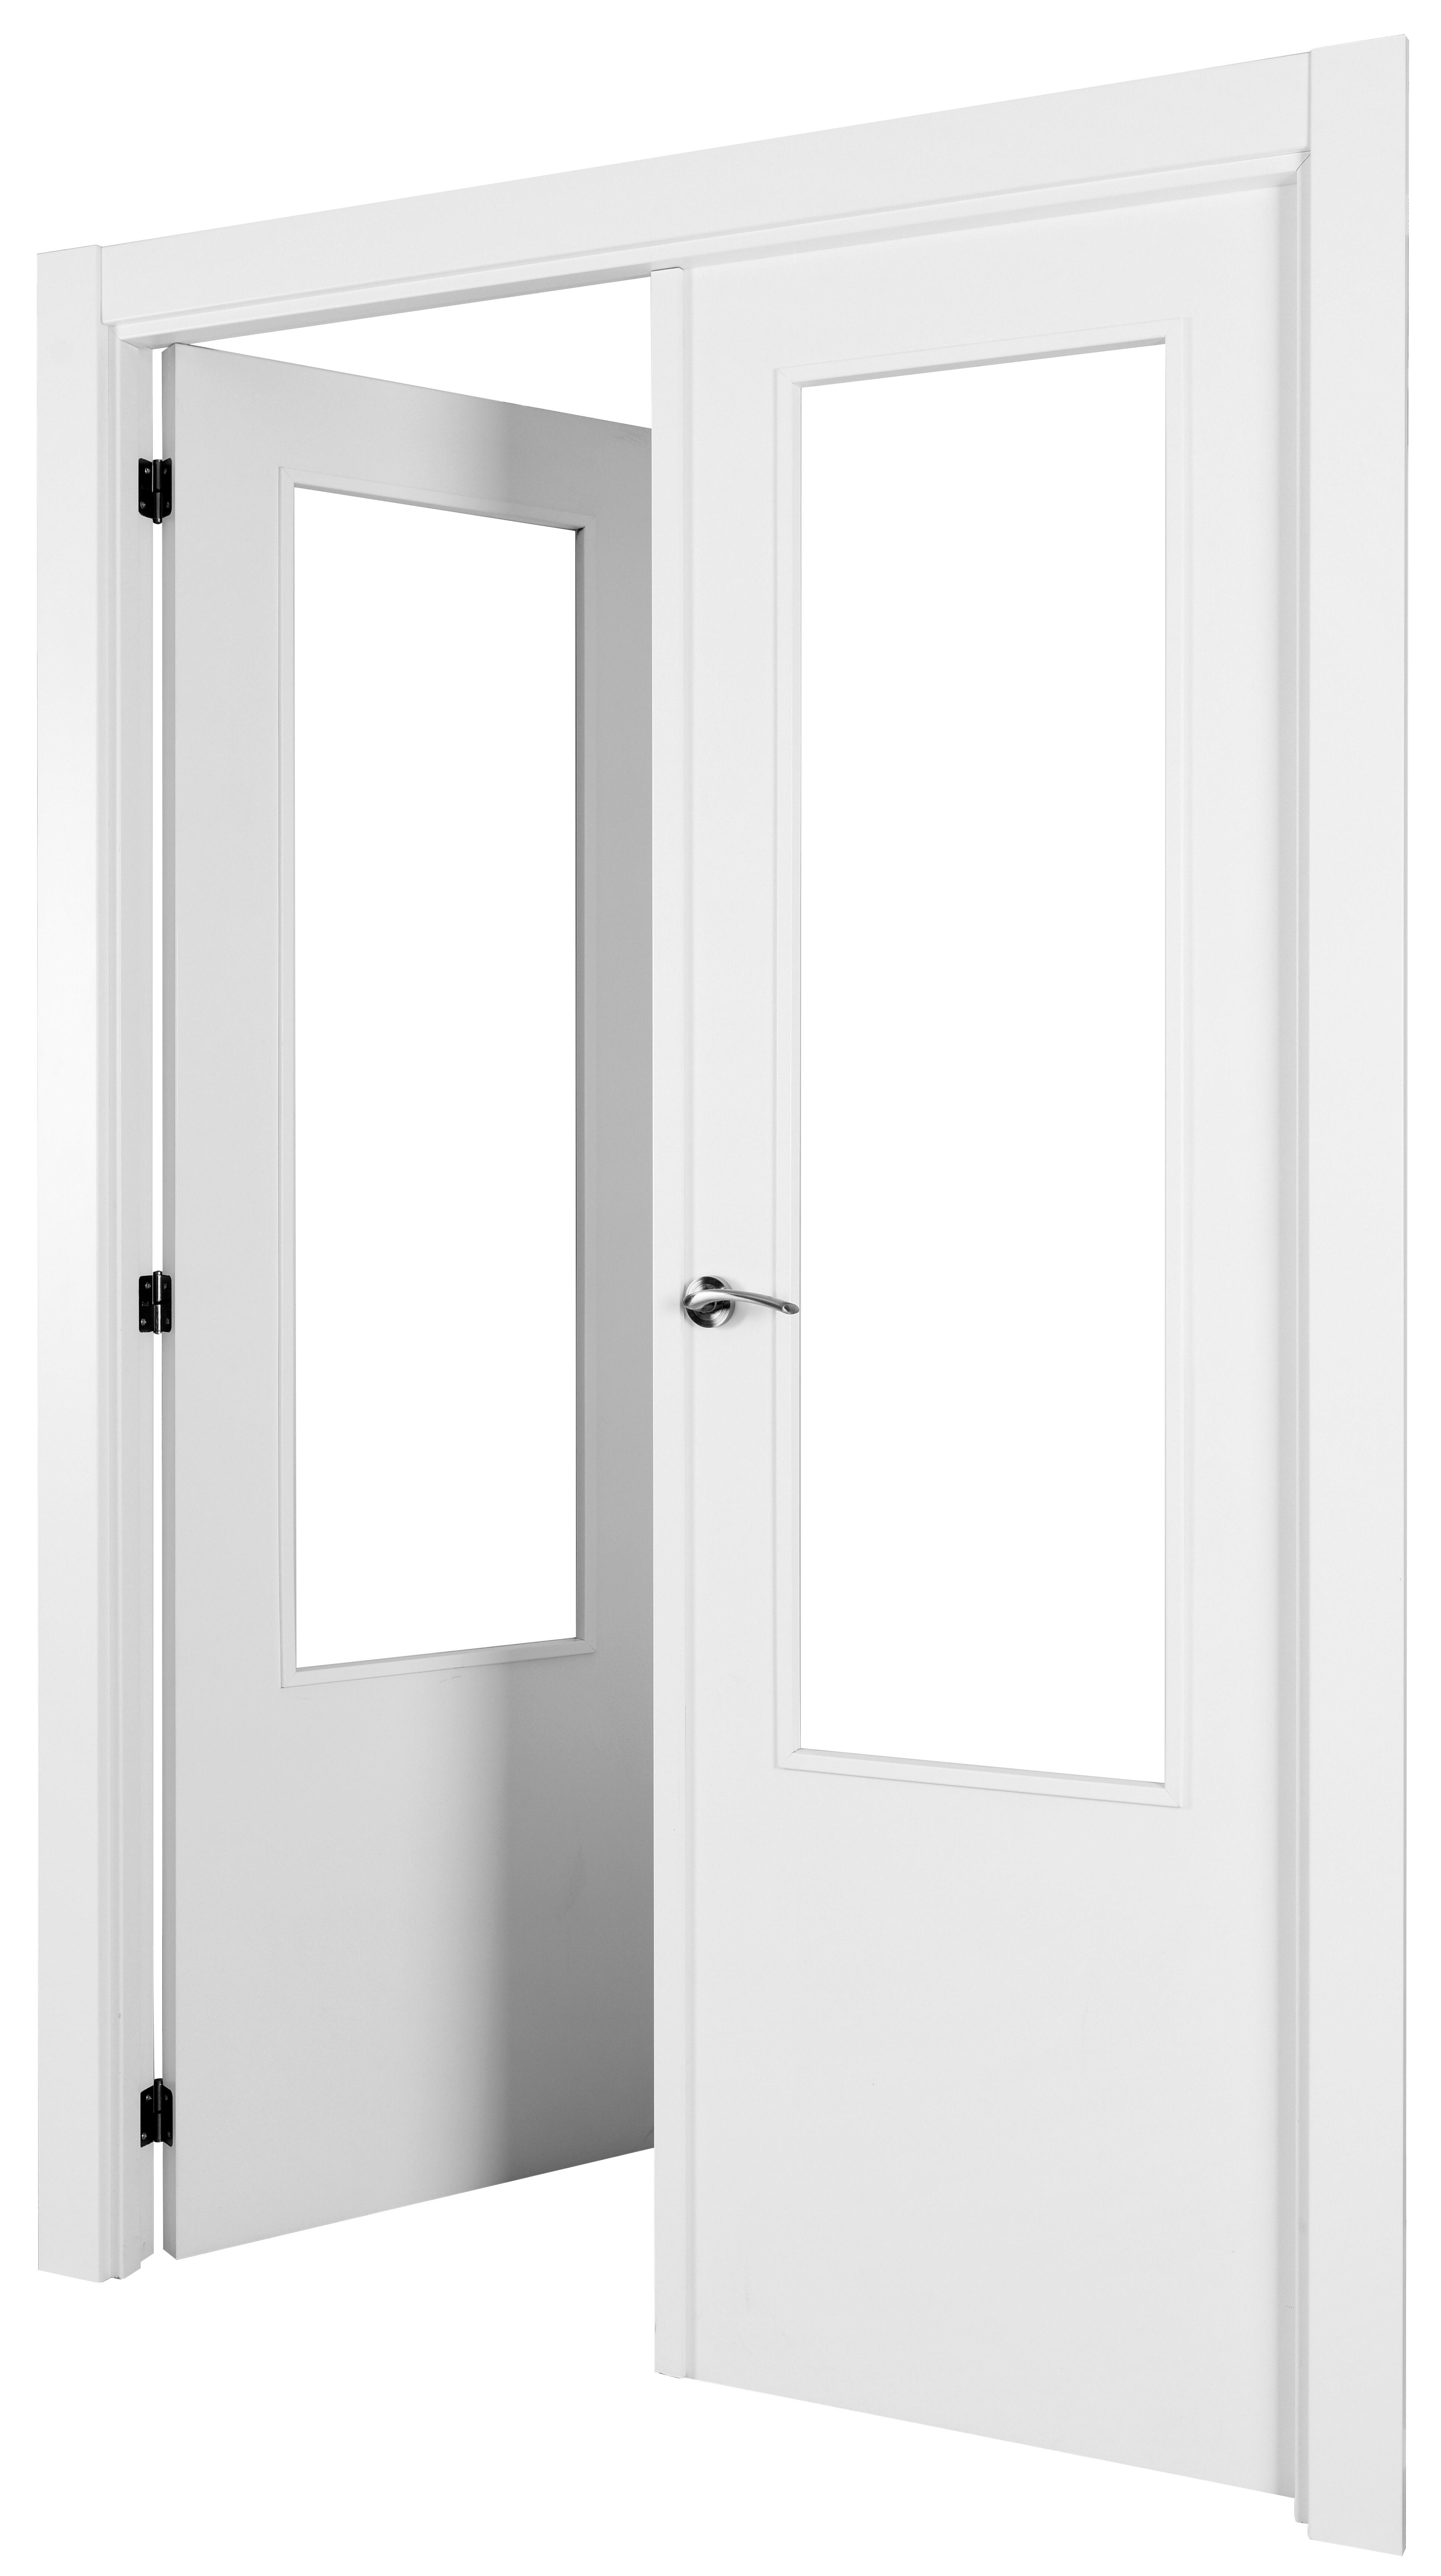 Puerta abatible lyon blanca aero blanco izquierda con cristal de 90x30 y 115cm